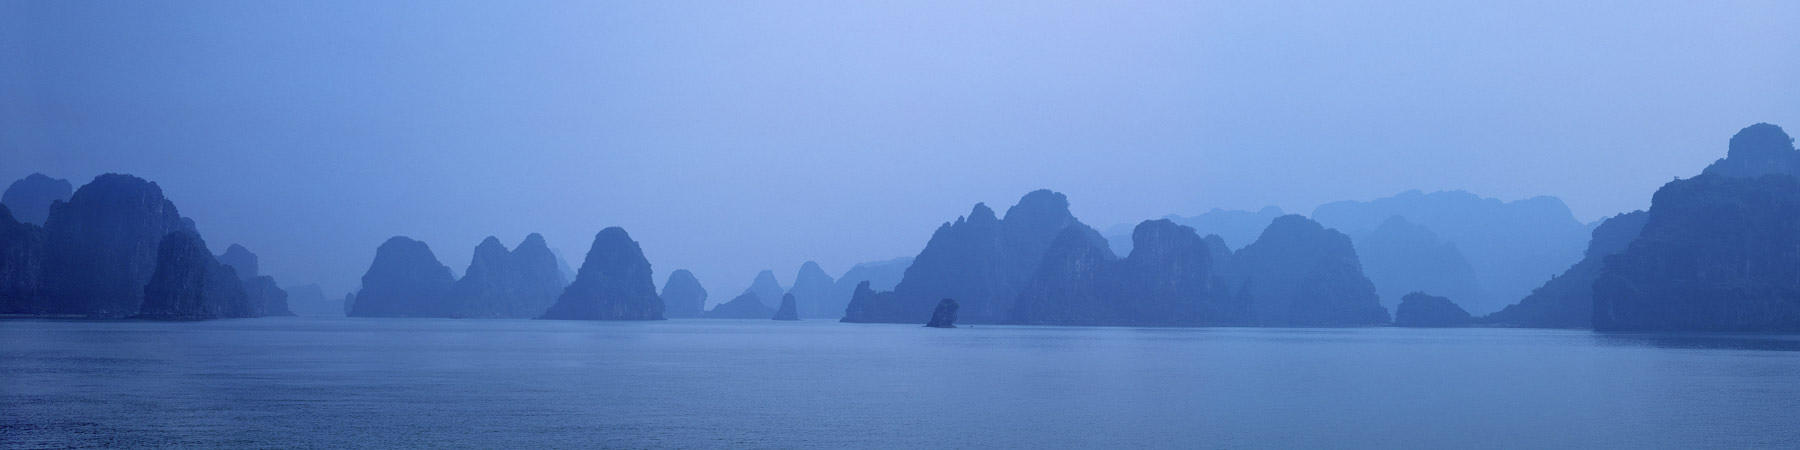 La Baie d'Along, Vietnam - Photo Pêcheur d'Images